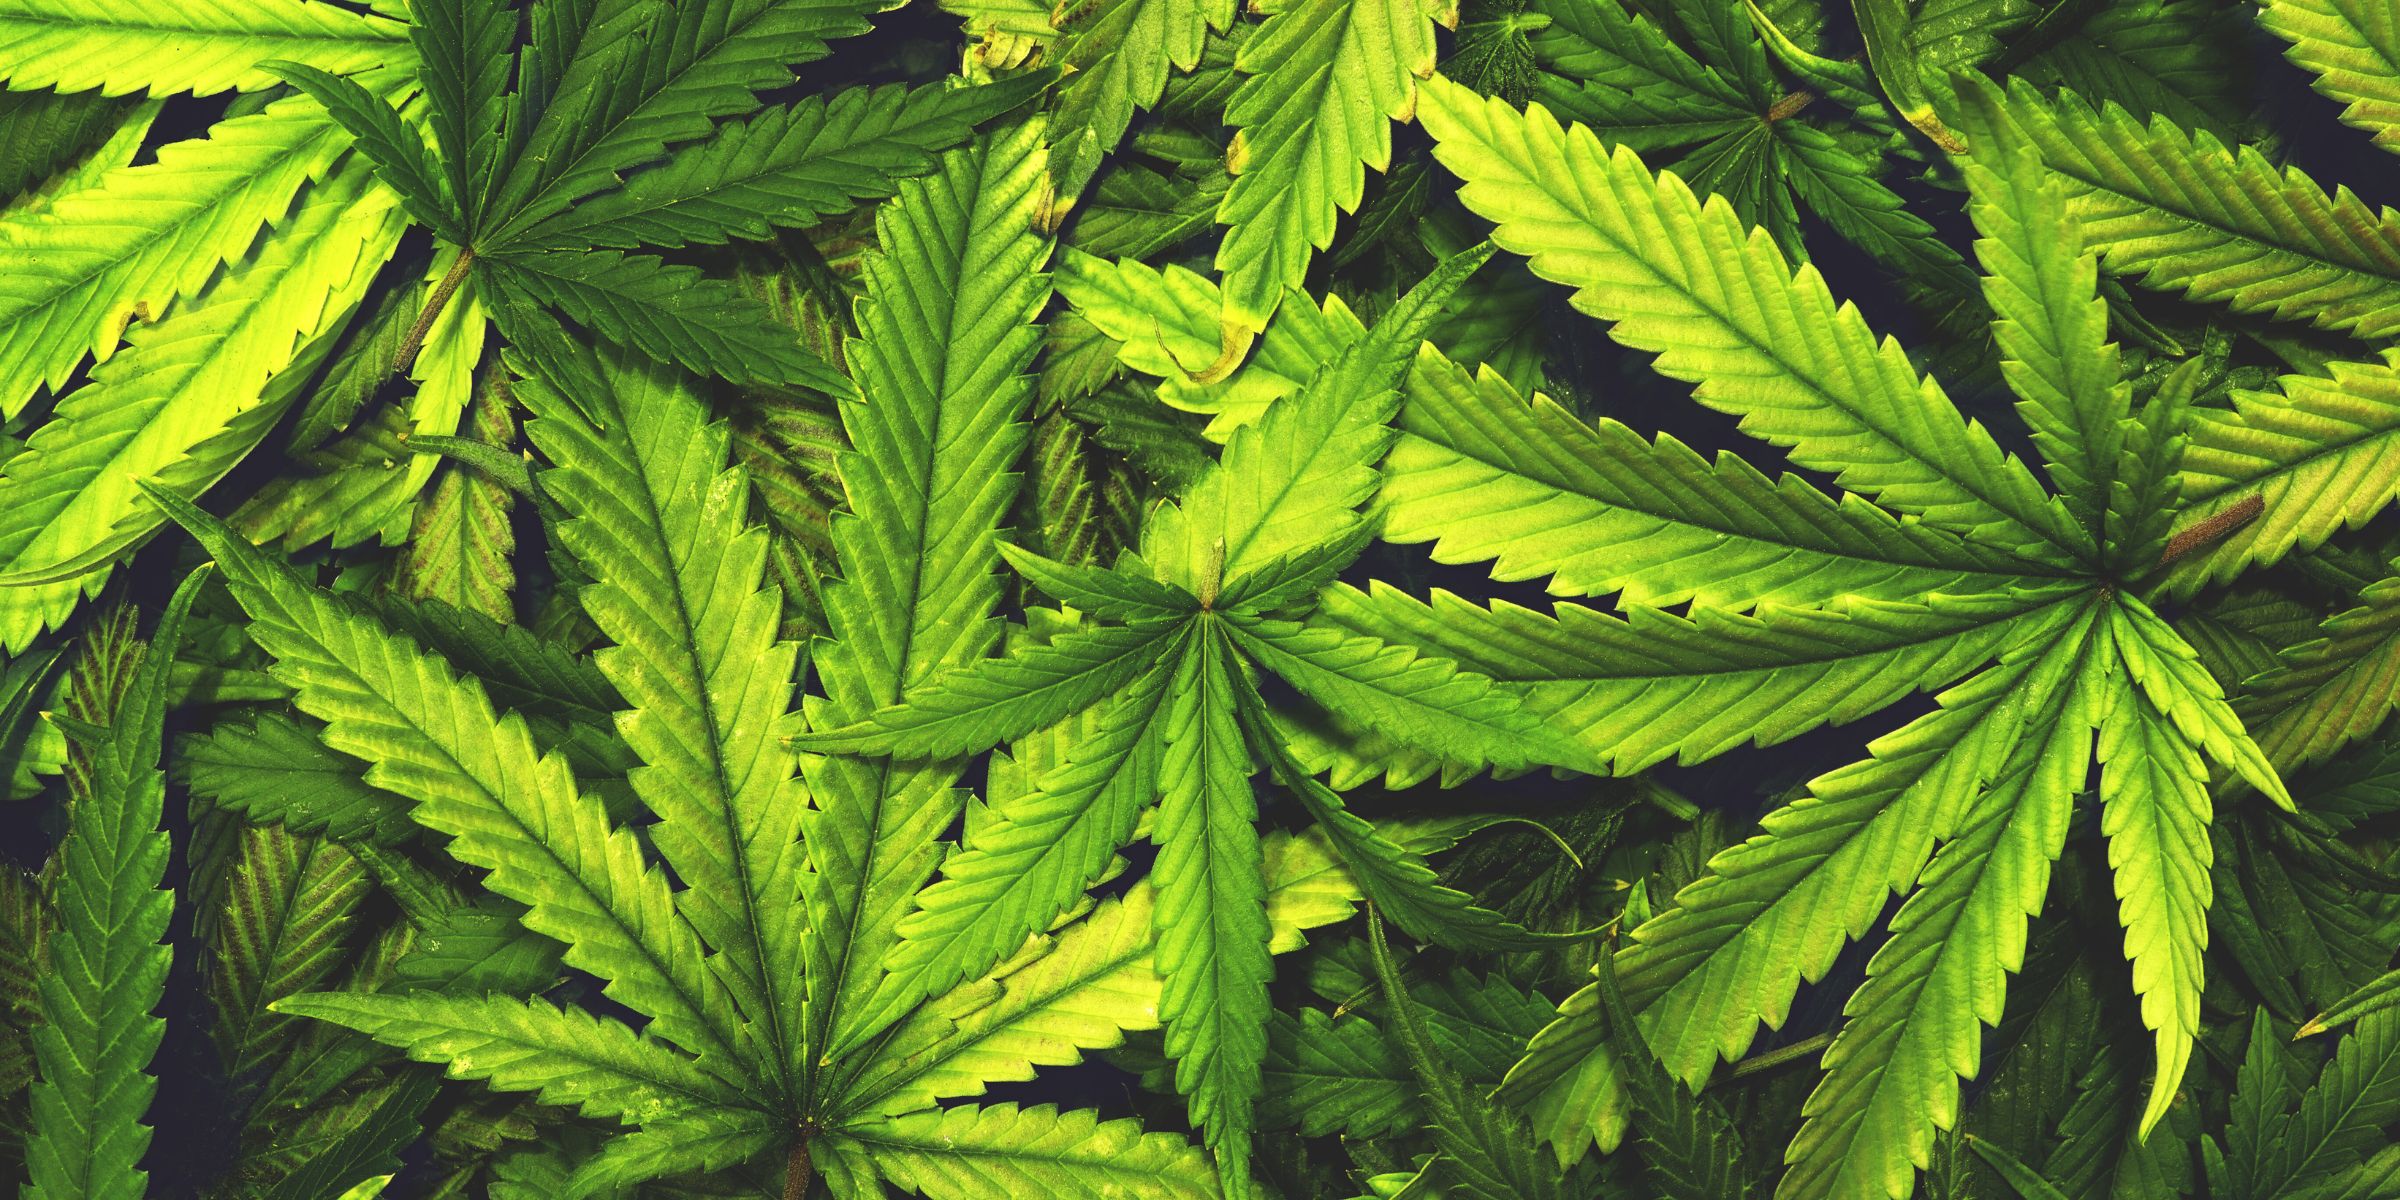 CBD from hemp and marijuana plants has many health benefits